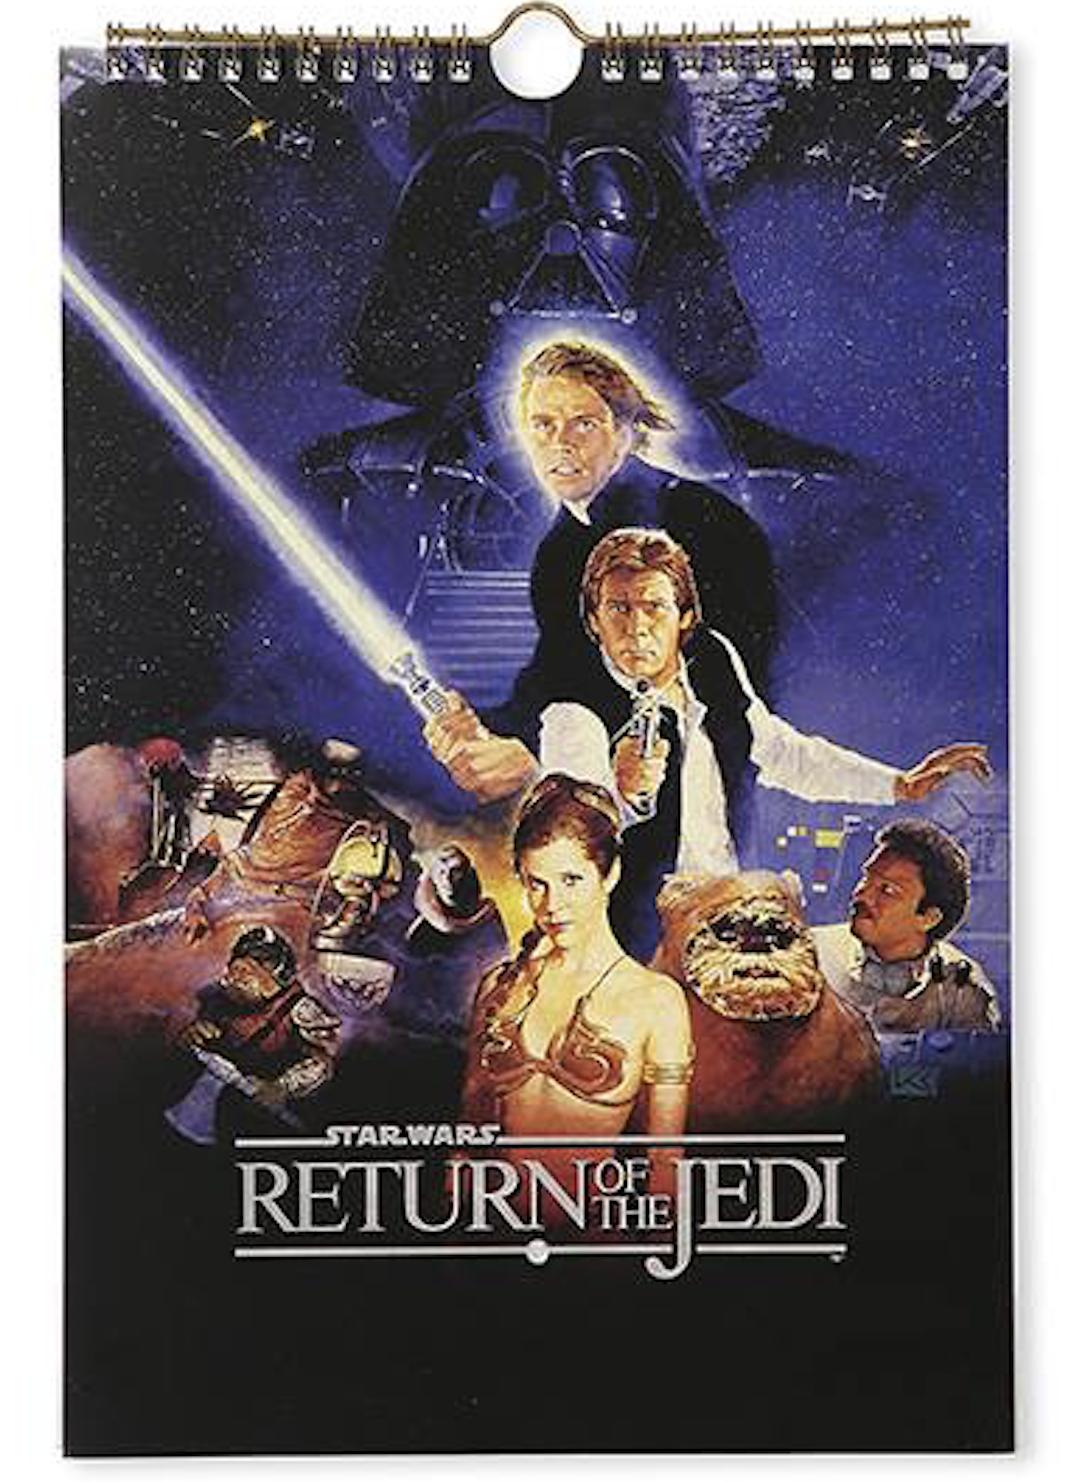 ปฏิทินสตาร์วอร์ส พร้อมส่ง การกลับมาของเจได ปฏิทินสตาร์วอร์ส สำหรับนักสะสม ปี 2561, ปี 2518  ปฏิทิน Star Wars, Return of the Jedi Calendar Year 2018 Starwars Calandar Star Wars Calendar